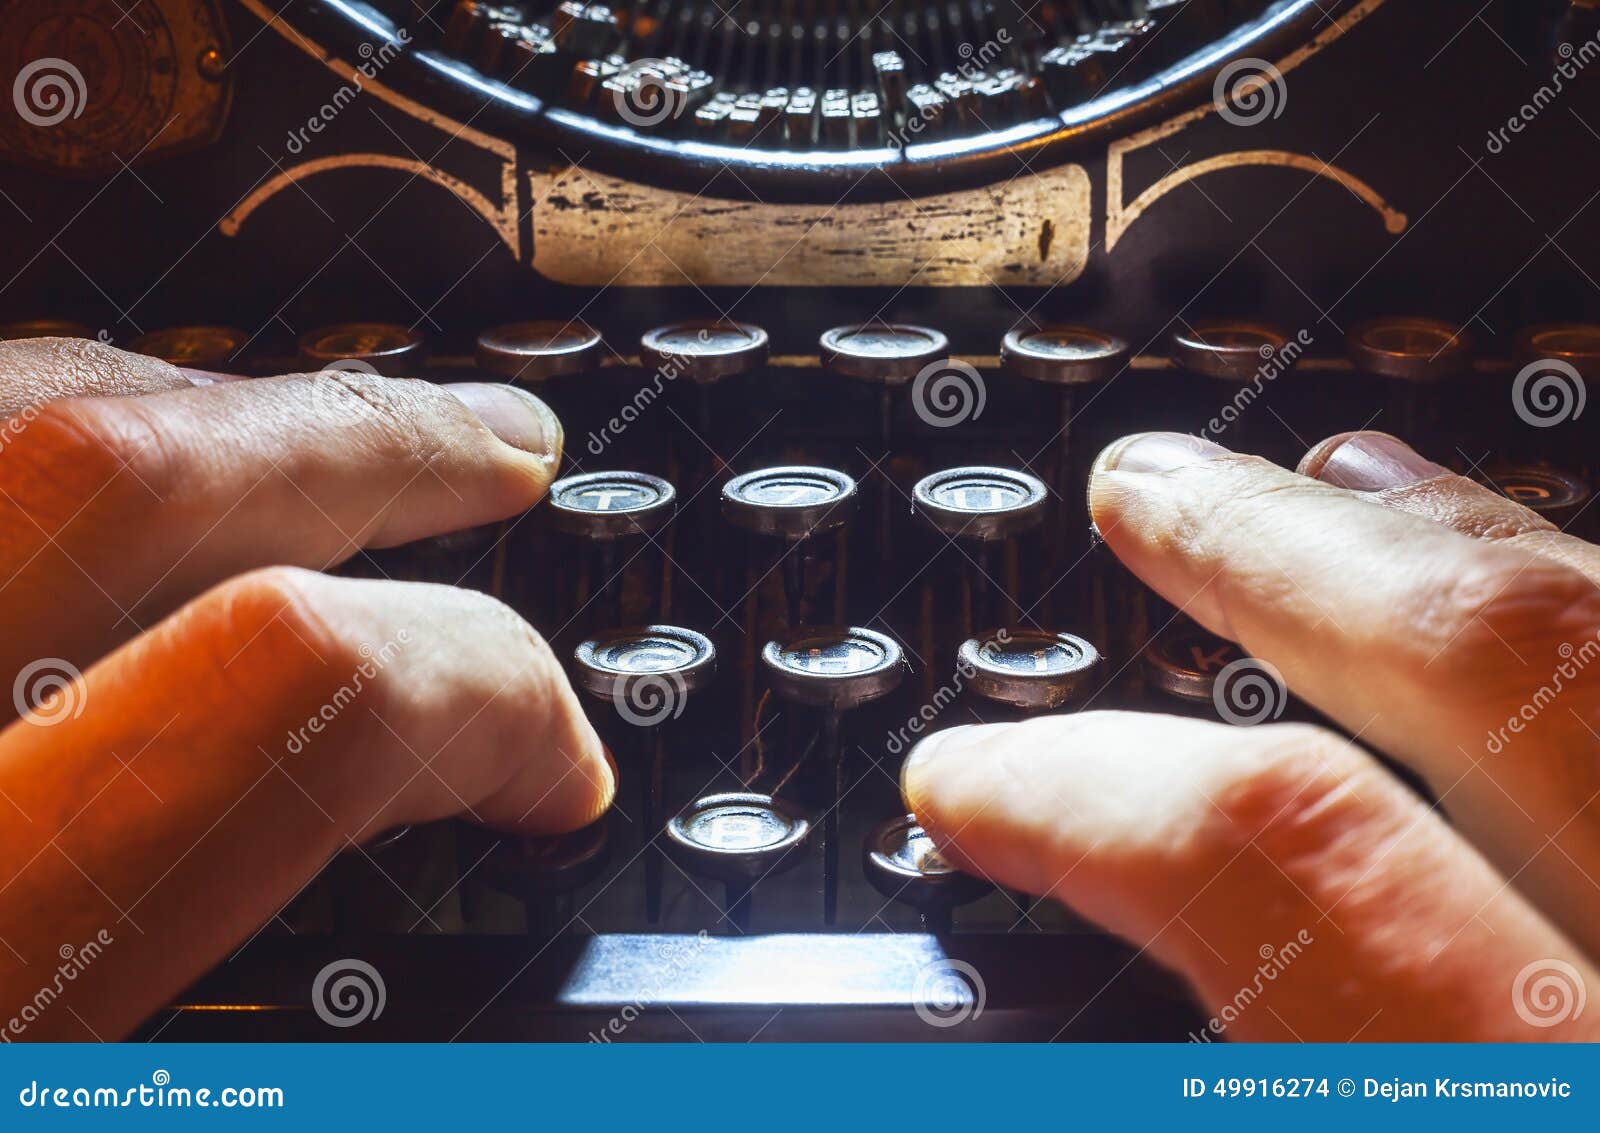 typewriting machine